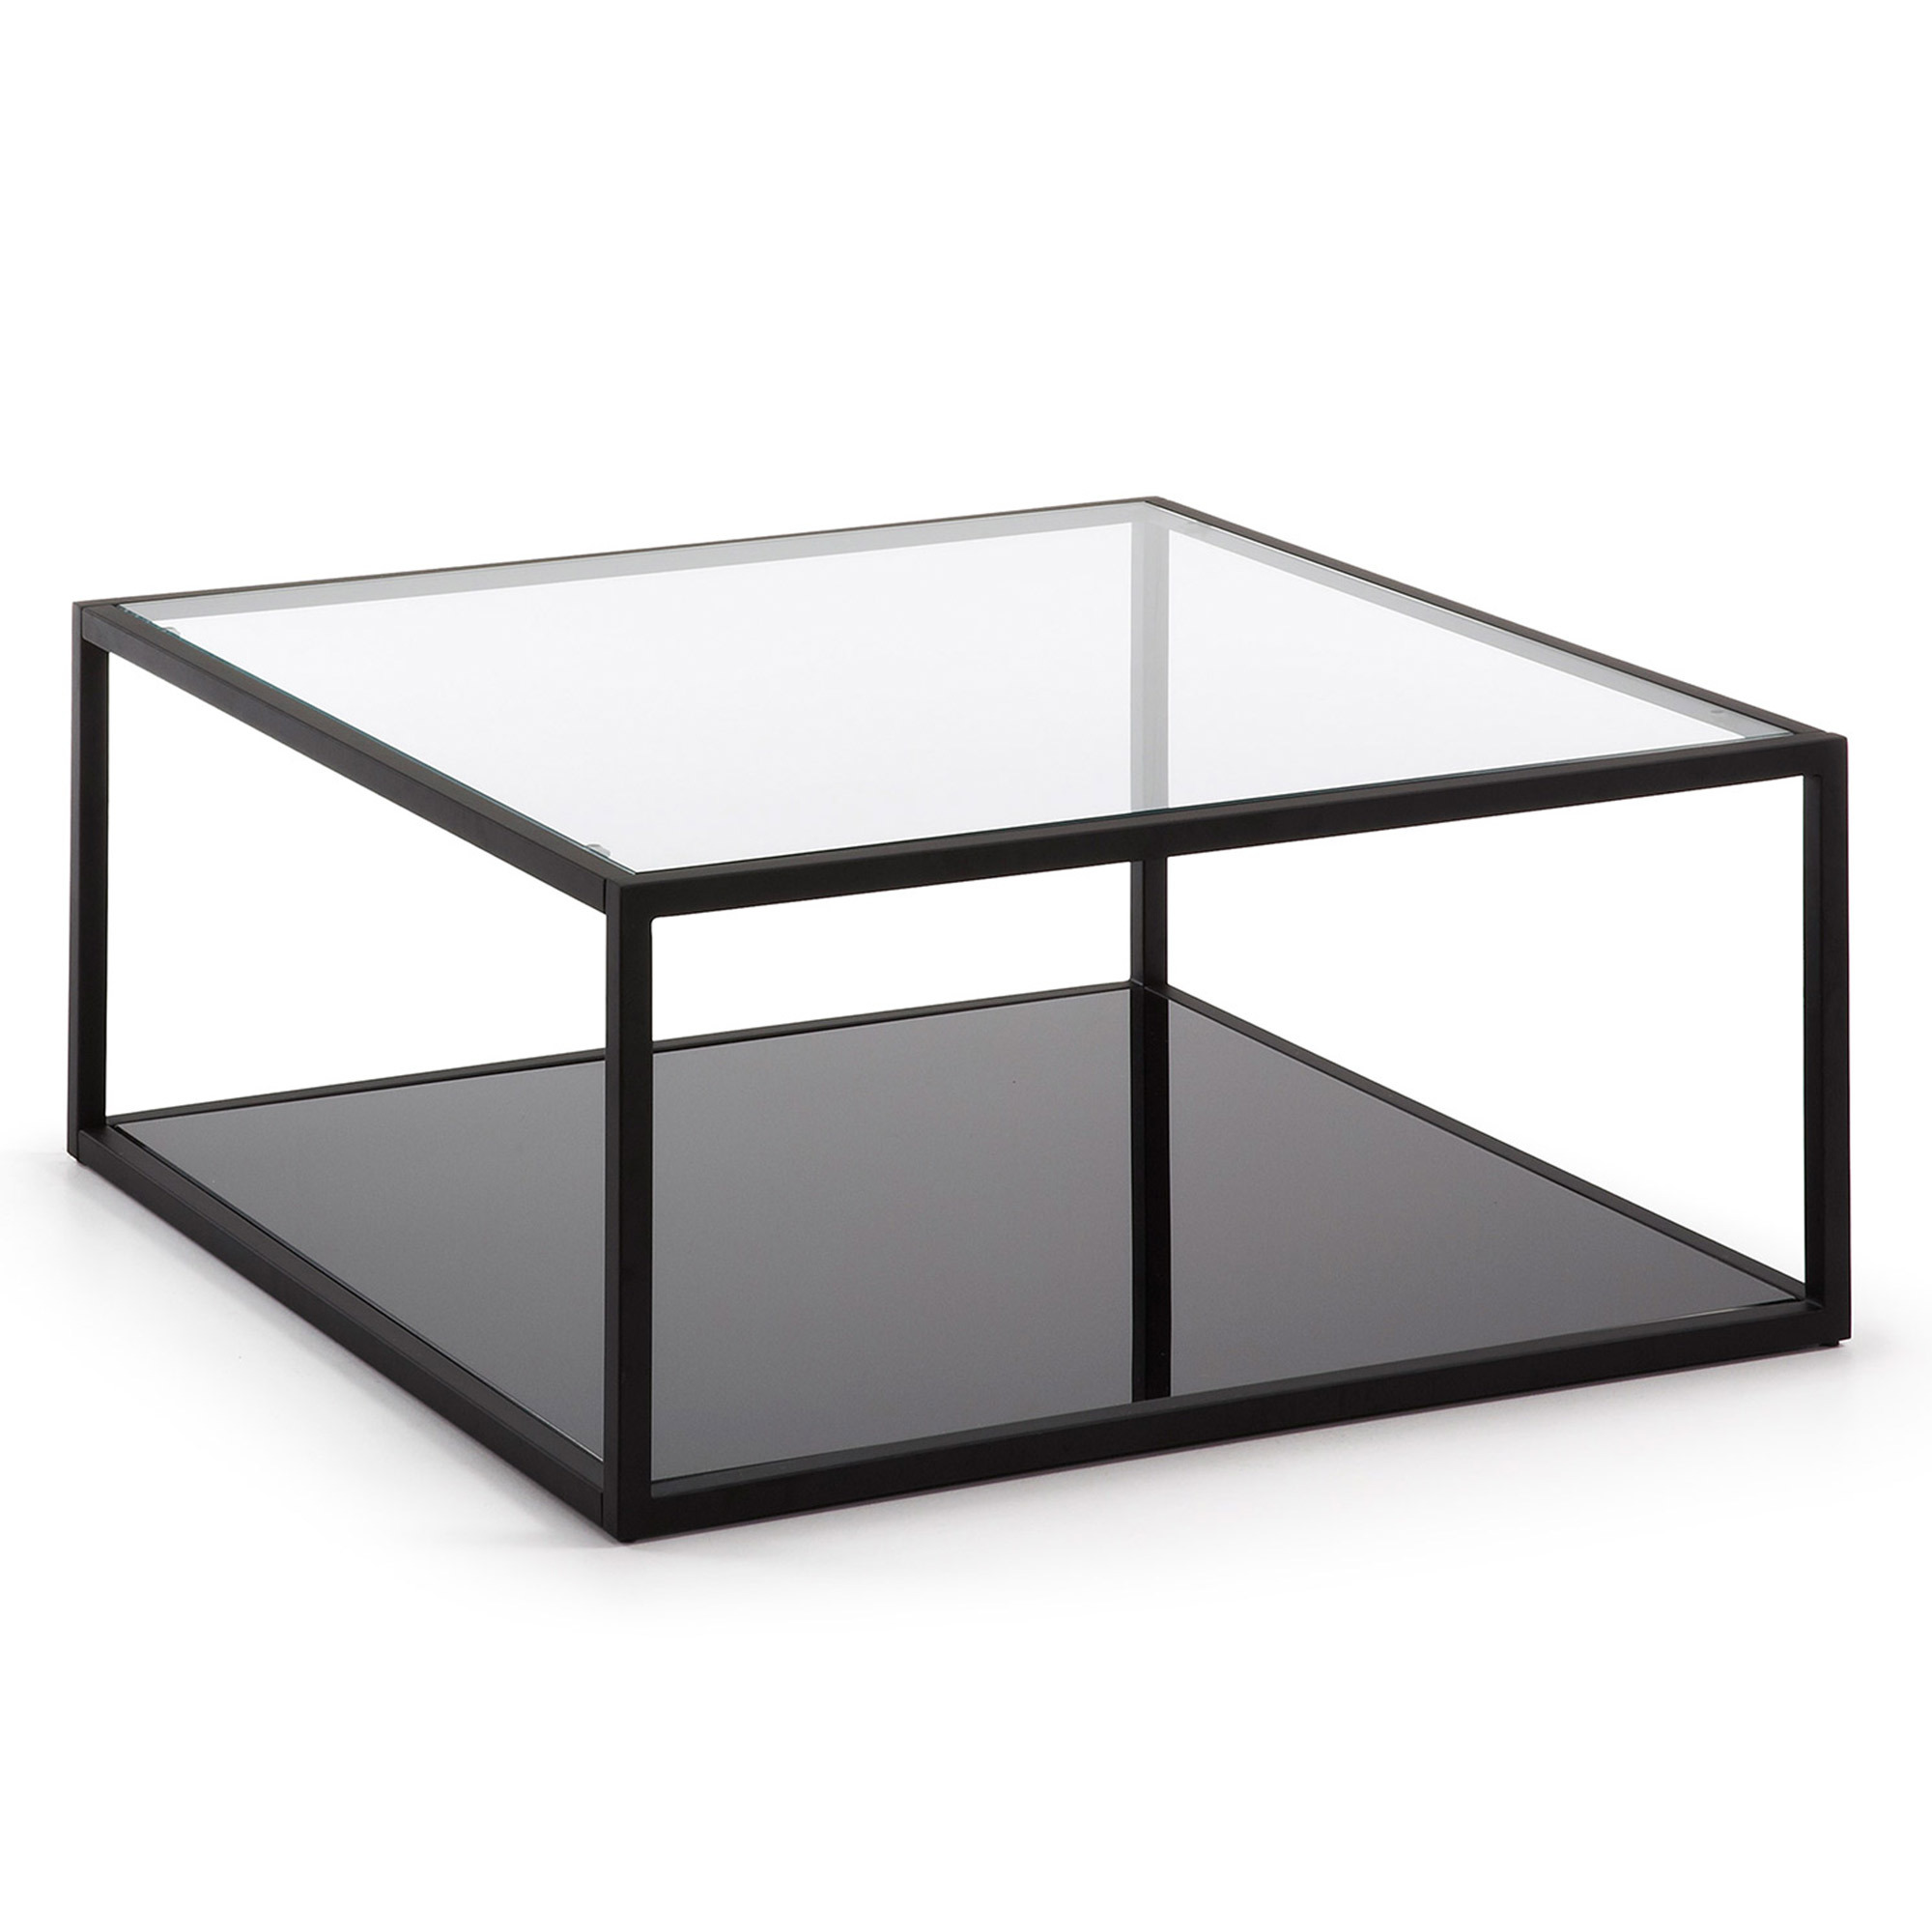 прямоугольный журнальный столик со стеклом